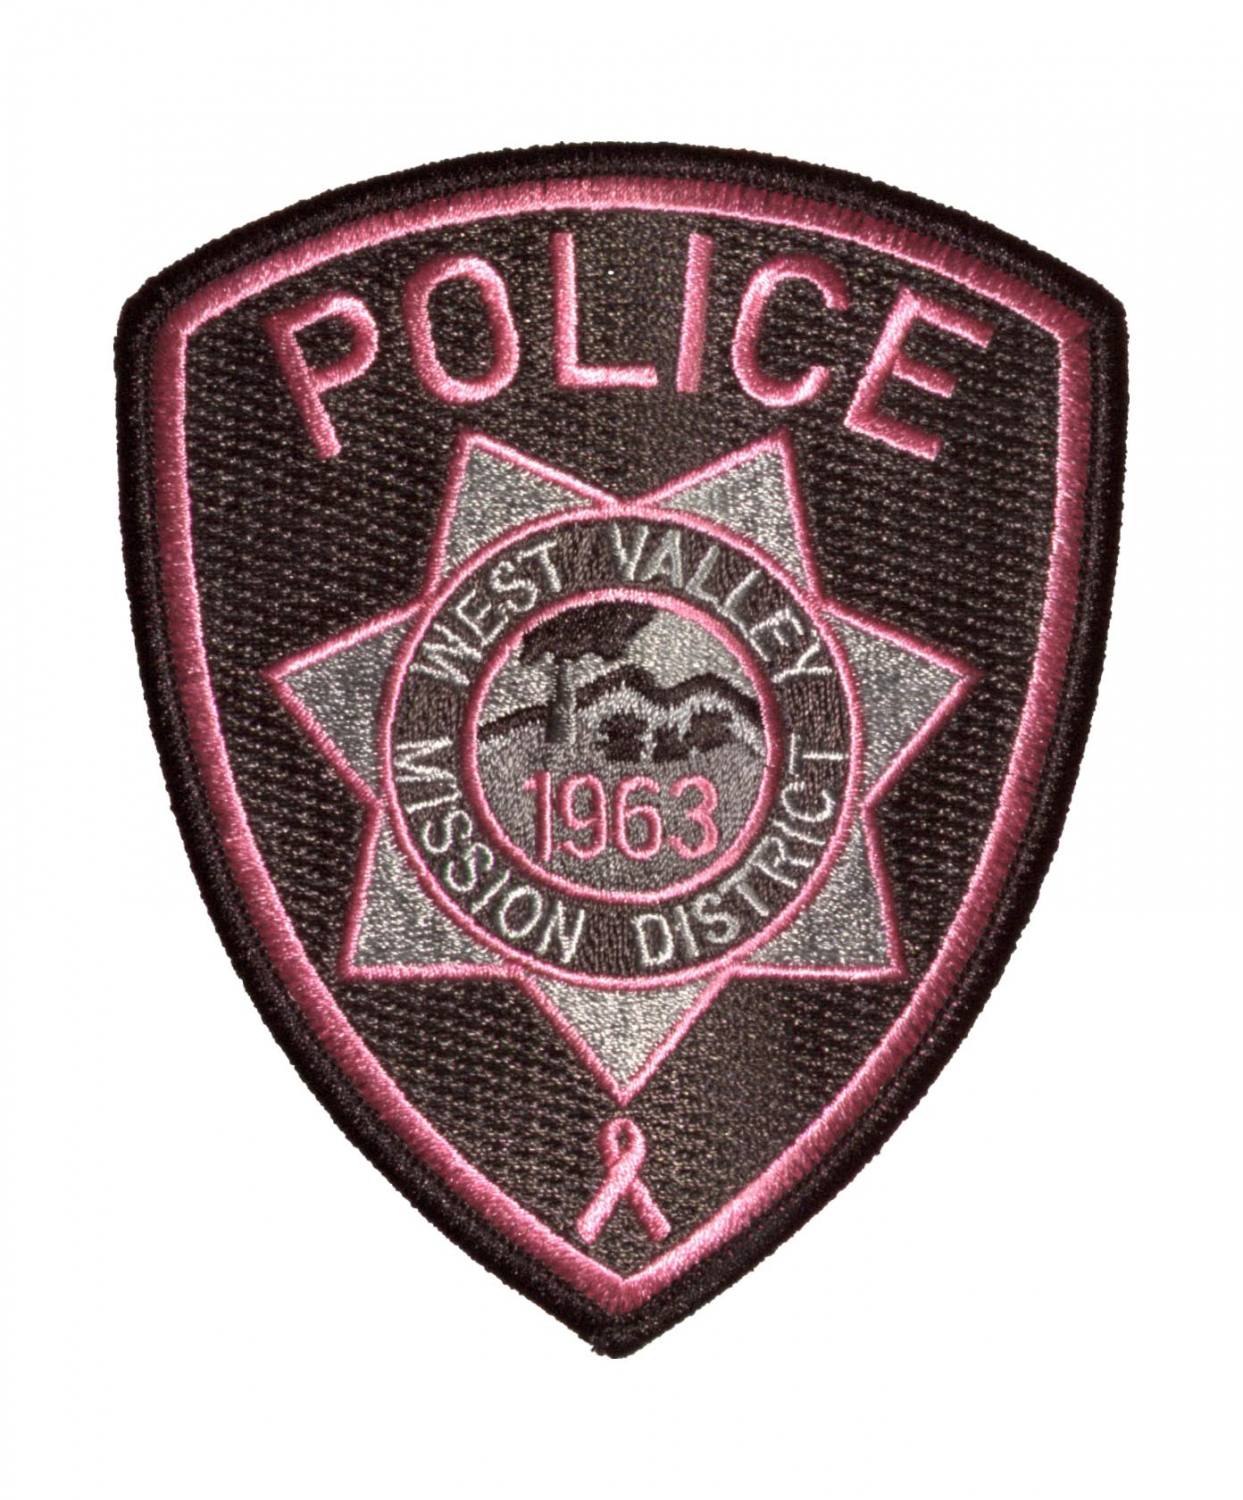 Pink Police emblem